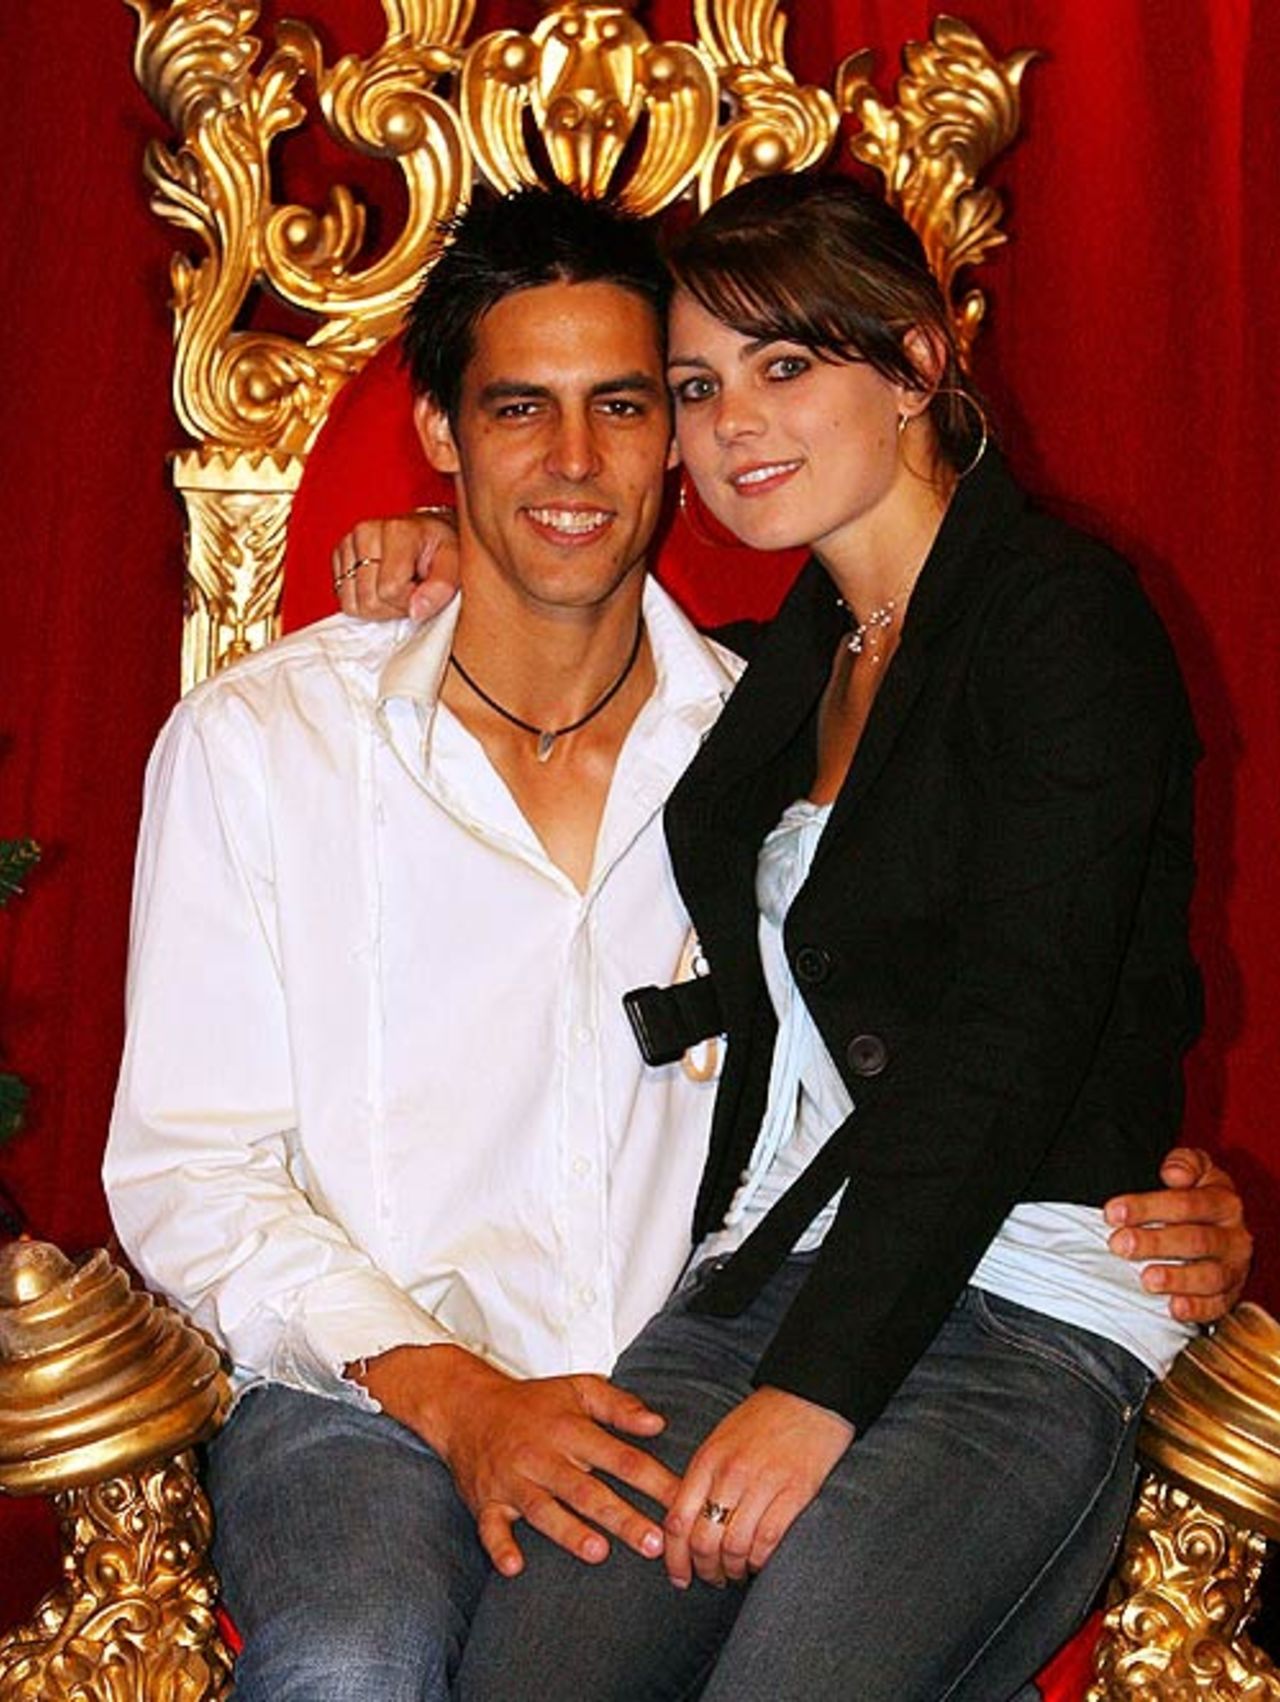 Mitchell Johnson with girlfriend Jessica Bratich, Melbourne, December 25, 2006